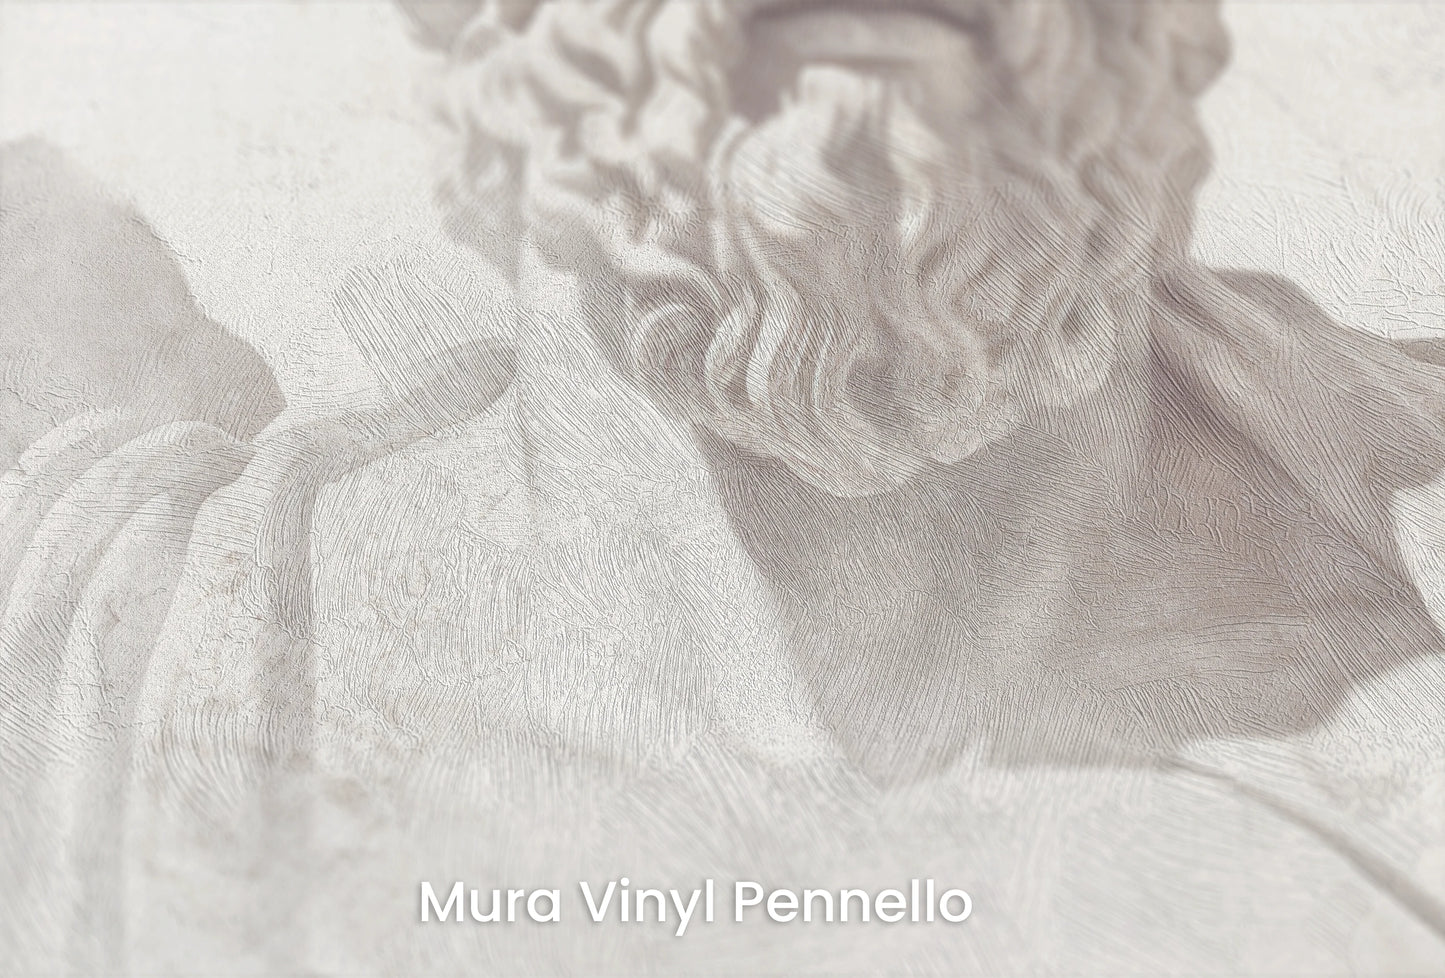 Zbliżenie na artystyczną fototapetę o nazwie Stoic Wisdom Revisited na podłożu Mura Vinyl Pennello - faktura pociągnięć pędzla malarskiego.